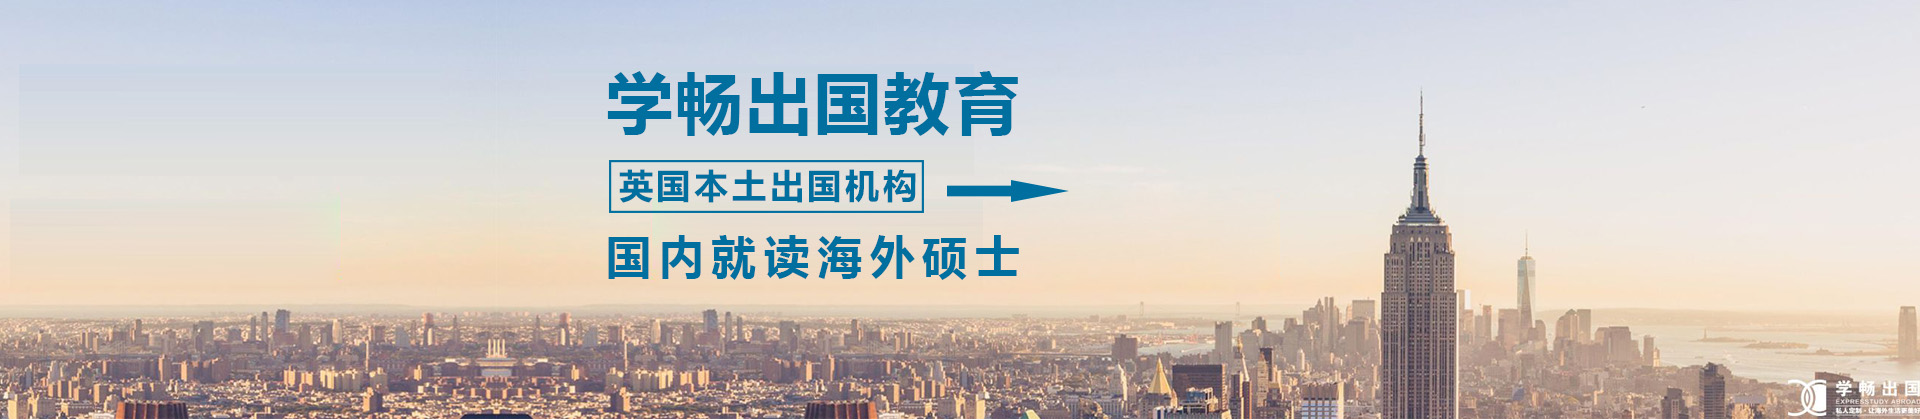 上海学畅国际教育